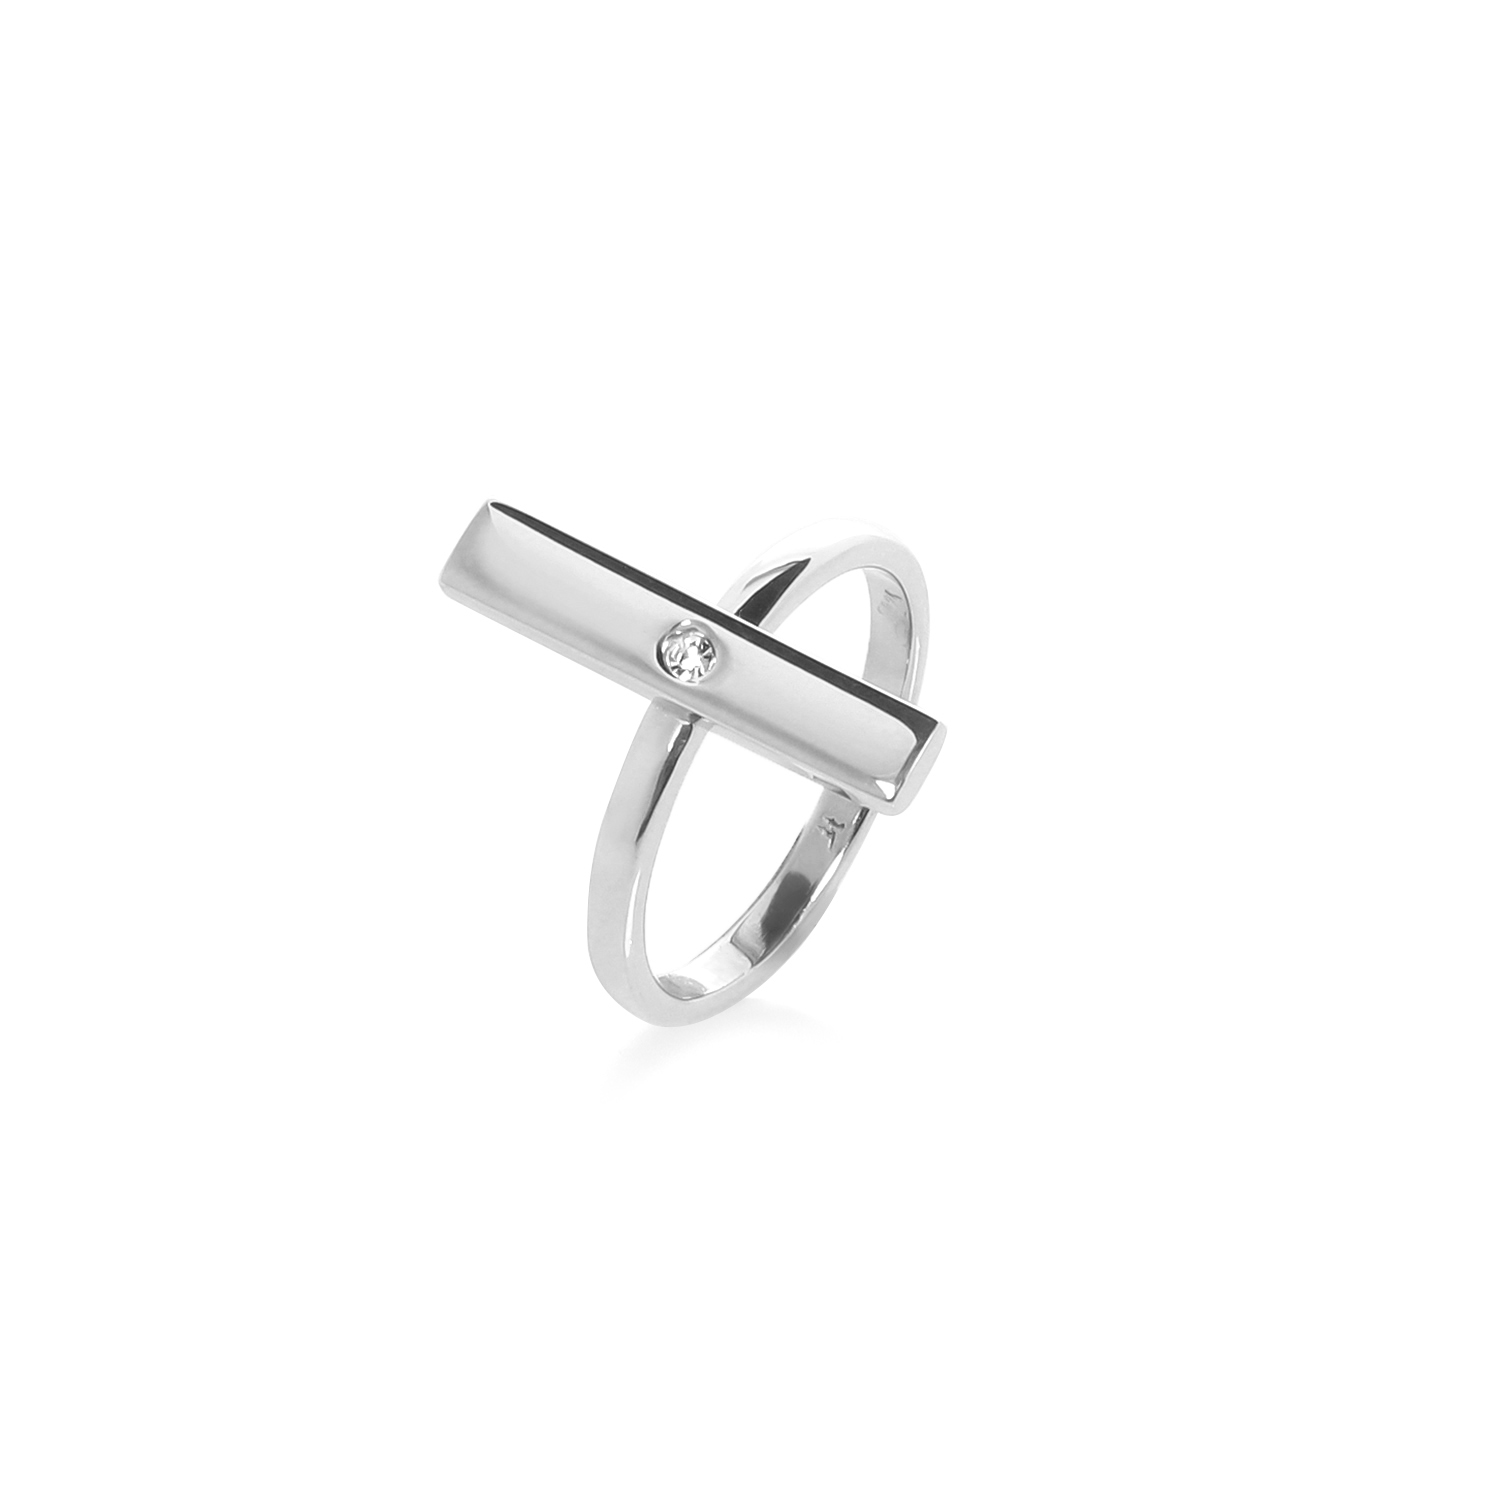 Γυναικεία/Αξεσουάρ/Κοσμήματα/Δαχτυλίδια FOLLI FOLLIE - Γυναικείο ασημένιο δαχτυλίδι FOLLI FOLLIE PLATE ασημί